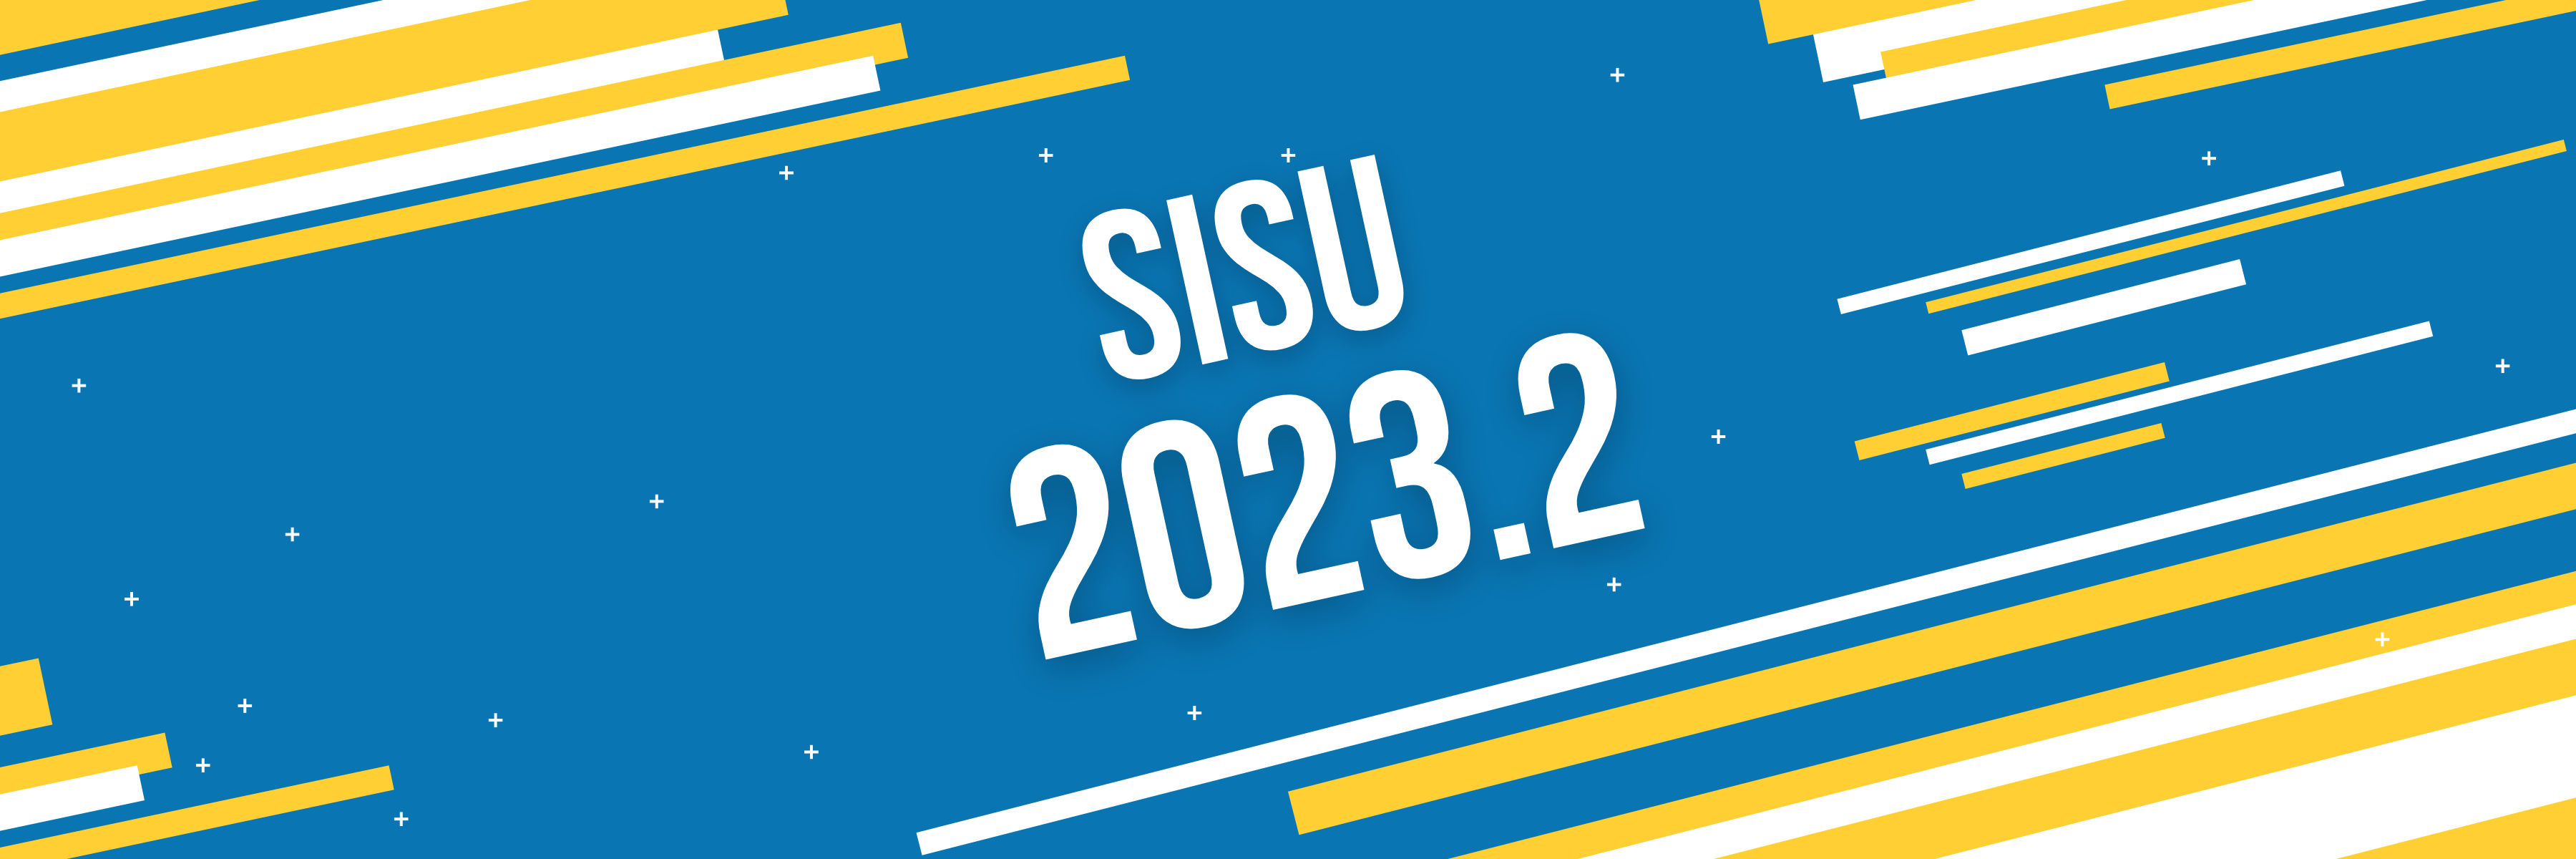 INSCRIÇÃO SISU 2023.2: que horas abre o Sisu 2023.2? Como funciona